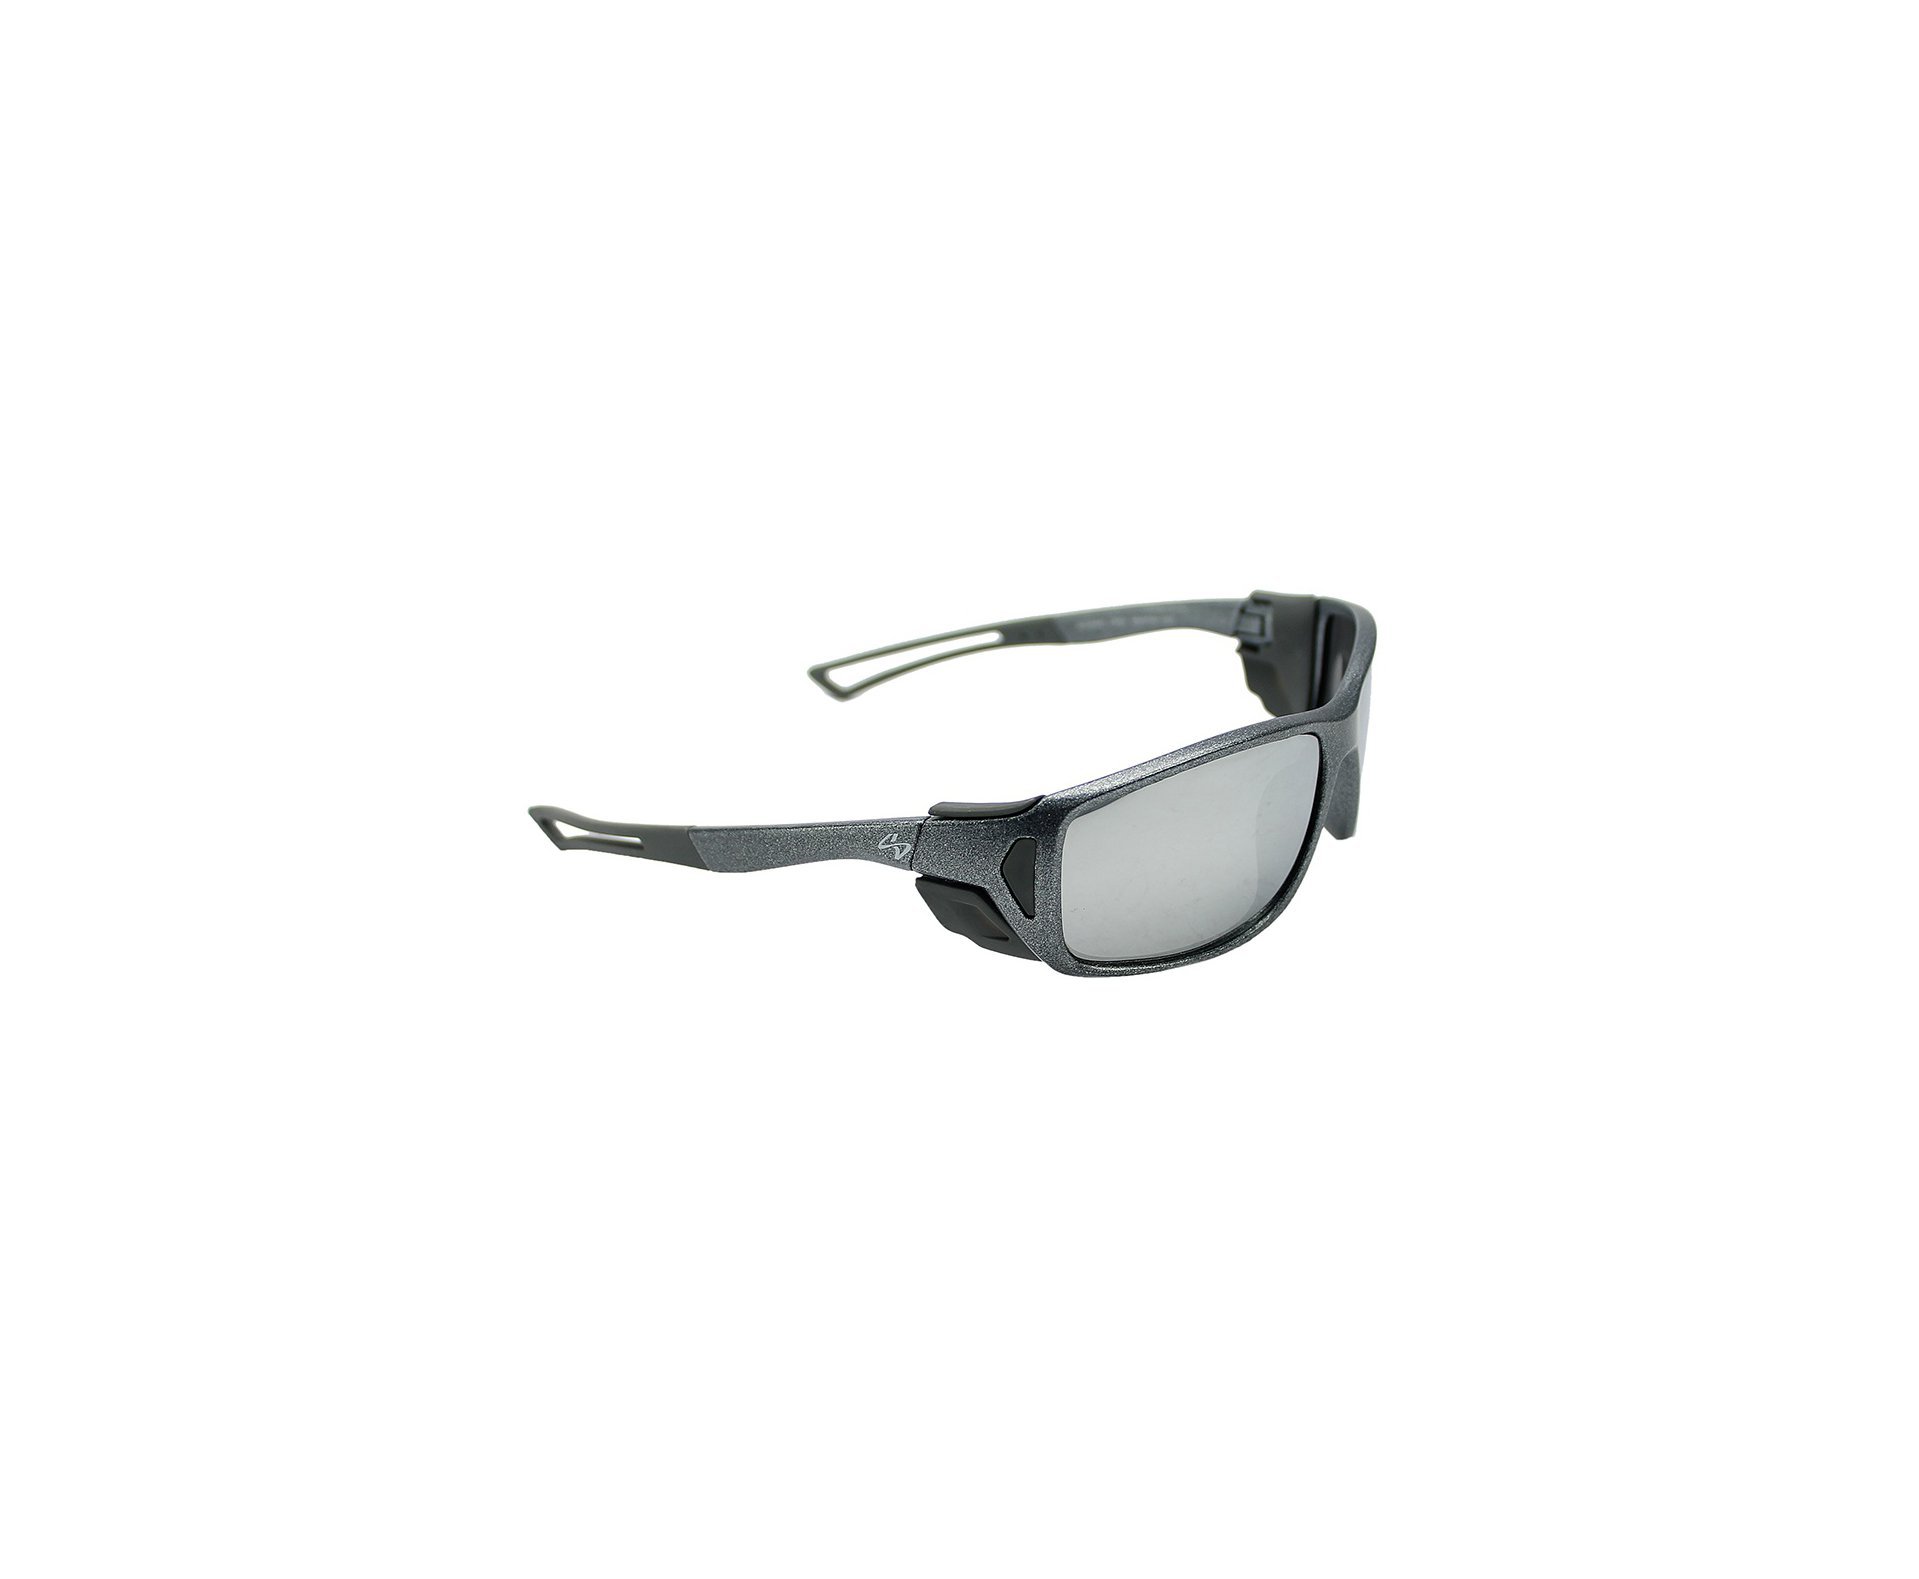 Óculos Balístico com Armação Prata - Lente Prata 20545 - C891 - Insano Shades Armação